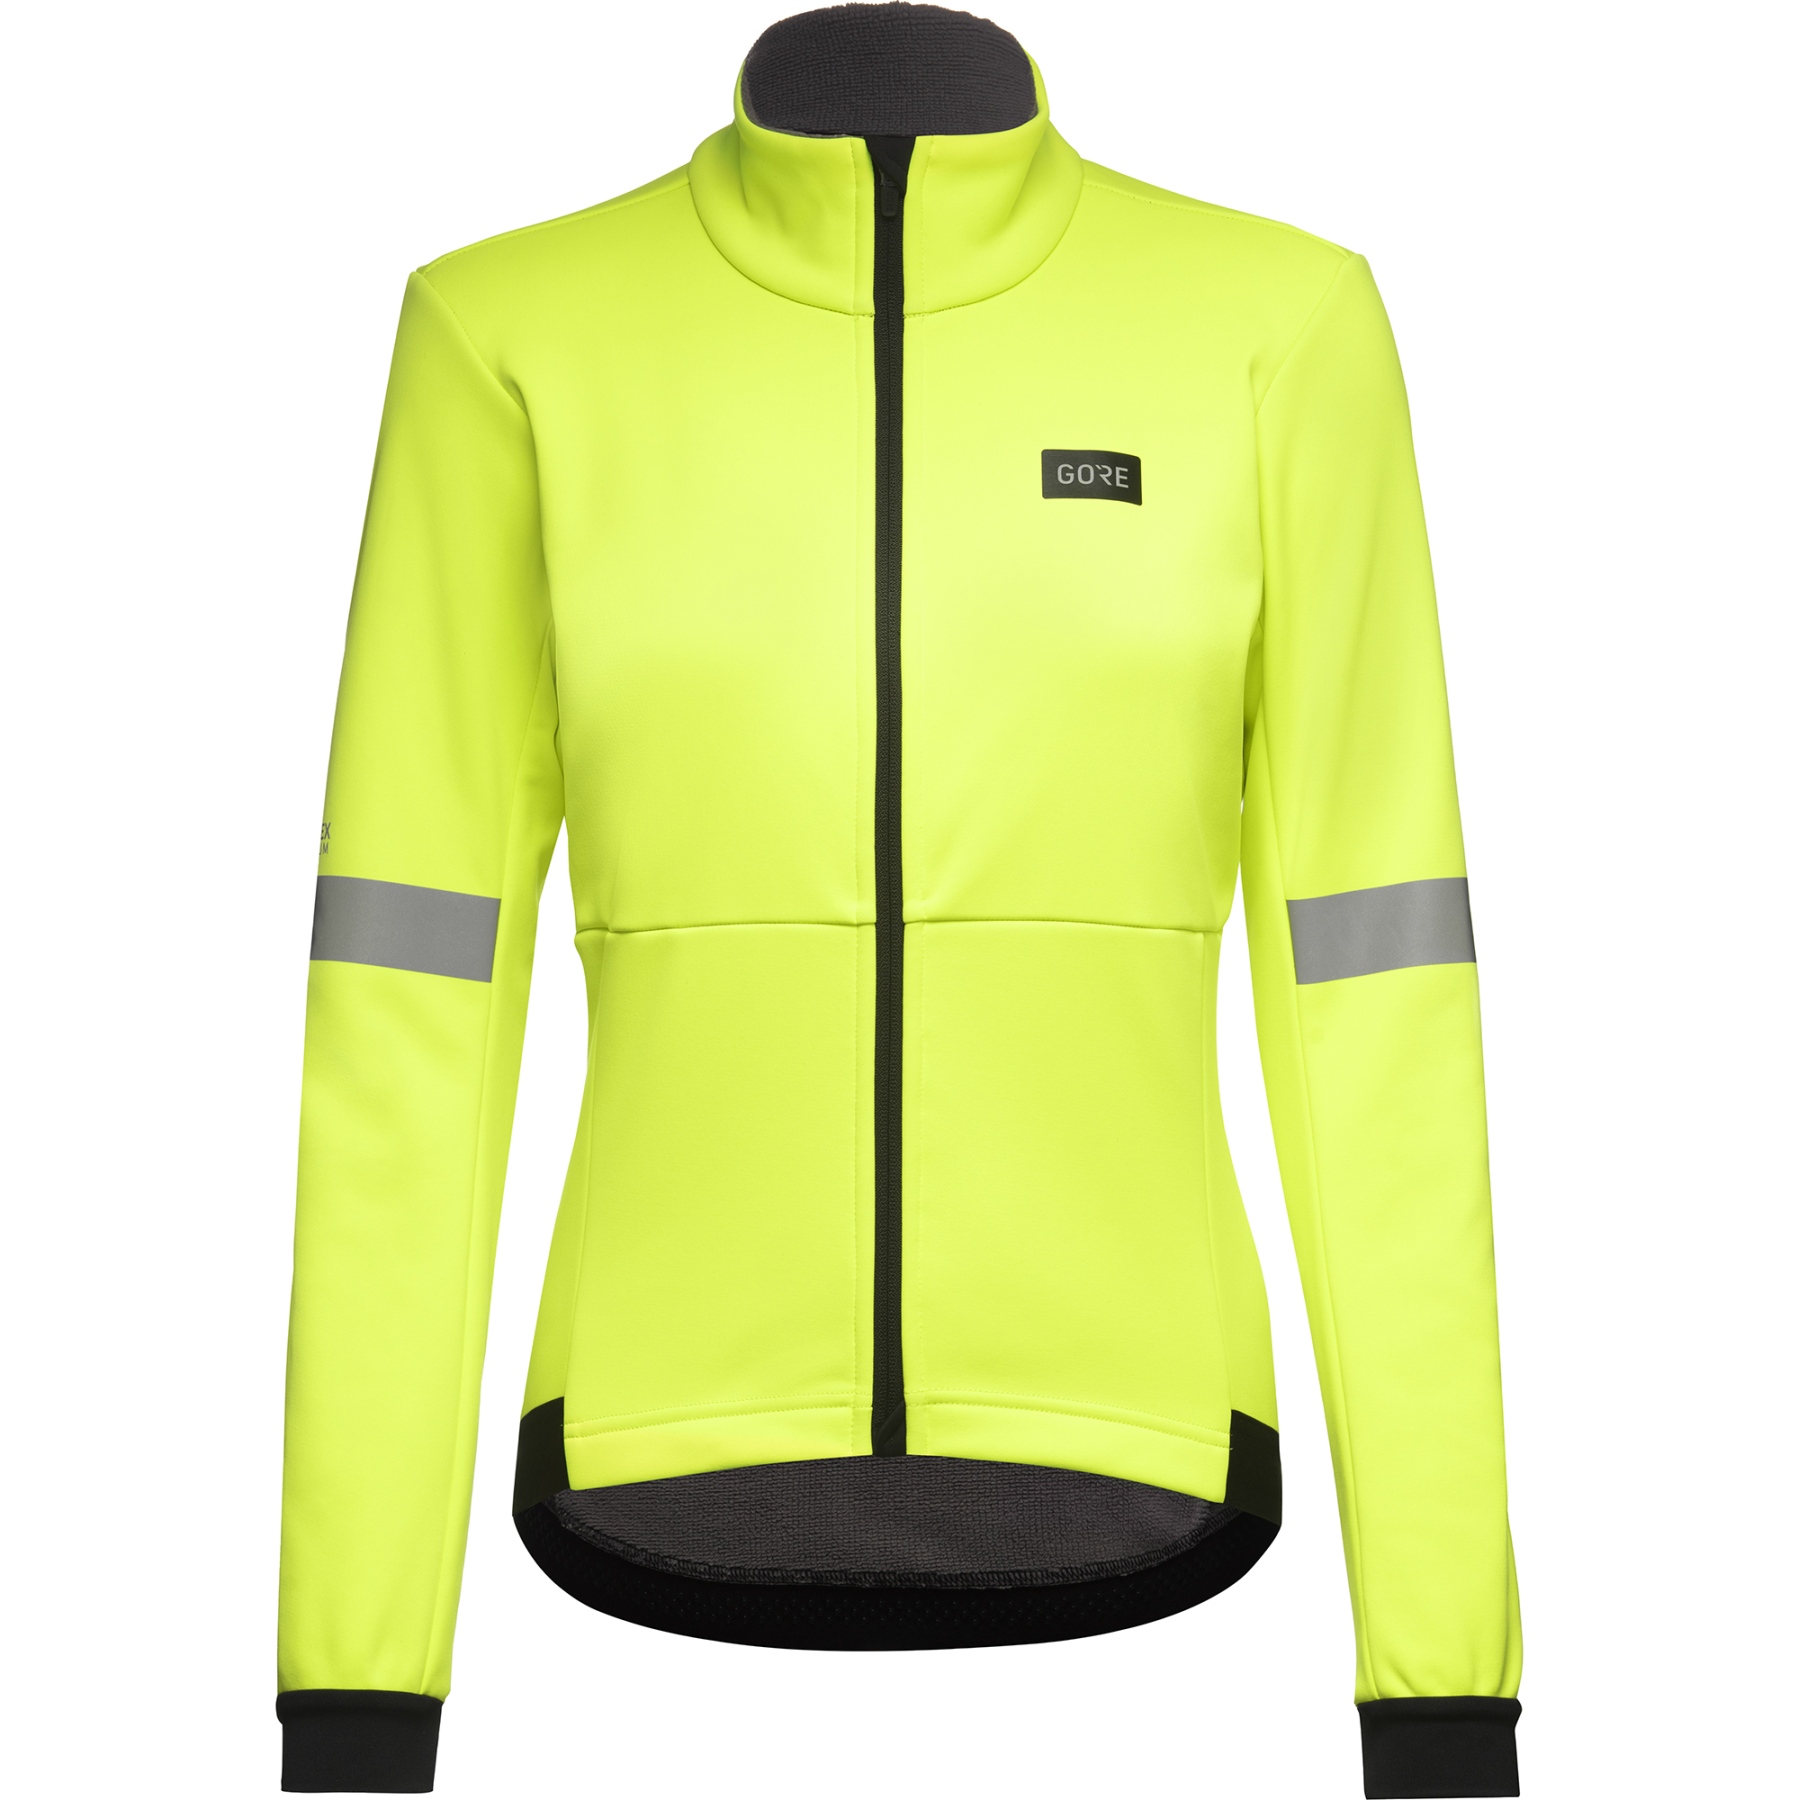 Productfoto van GOREWEAR Tempest Jacket for Women - neon yellow 0800